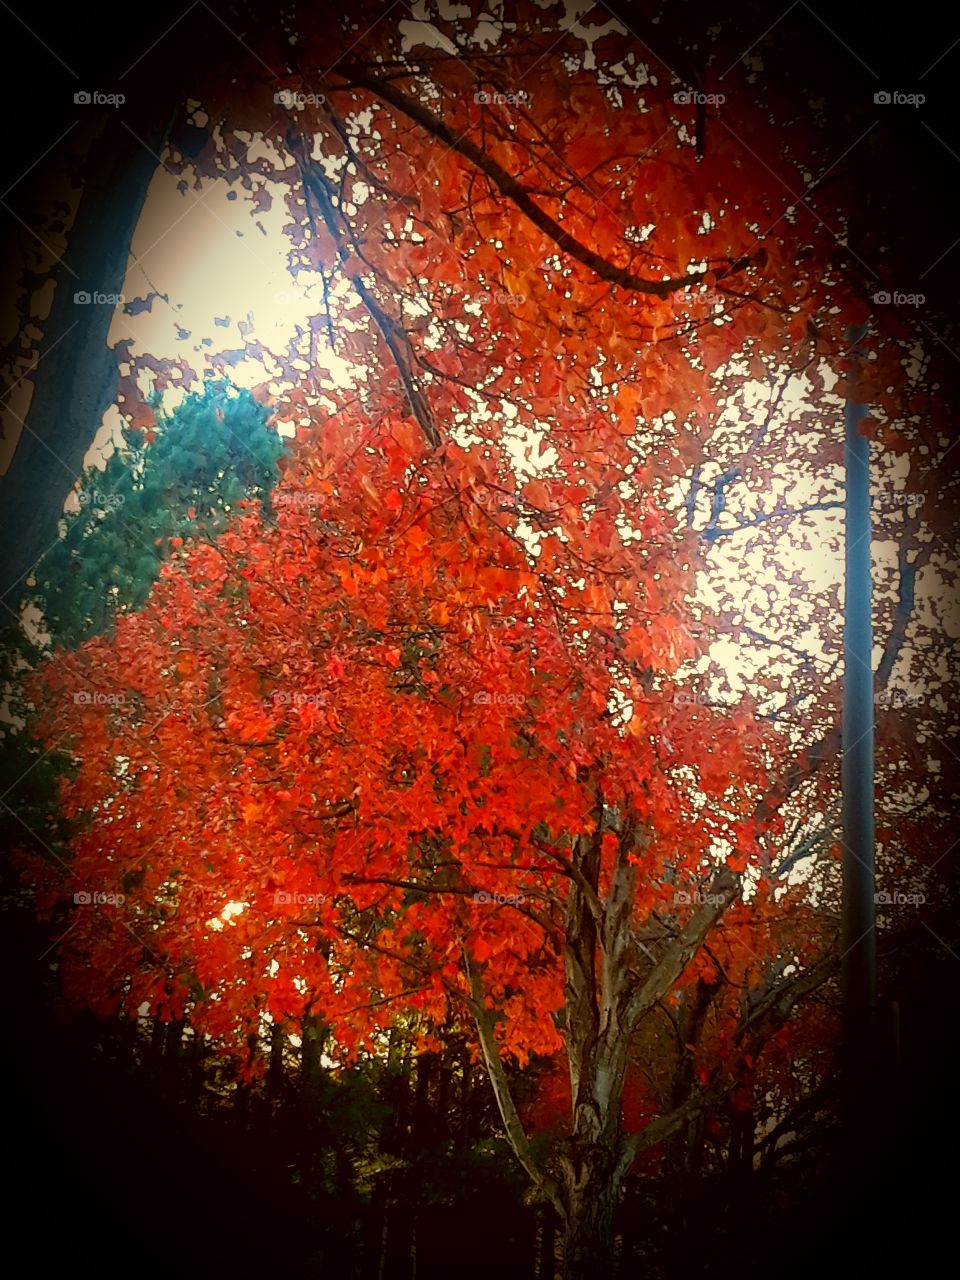 In Fall